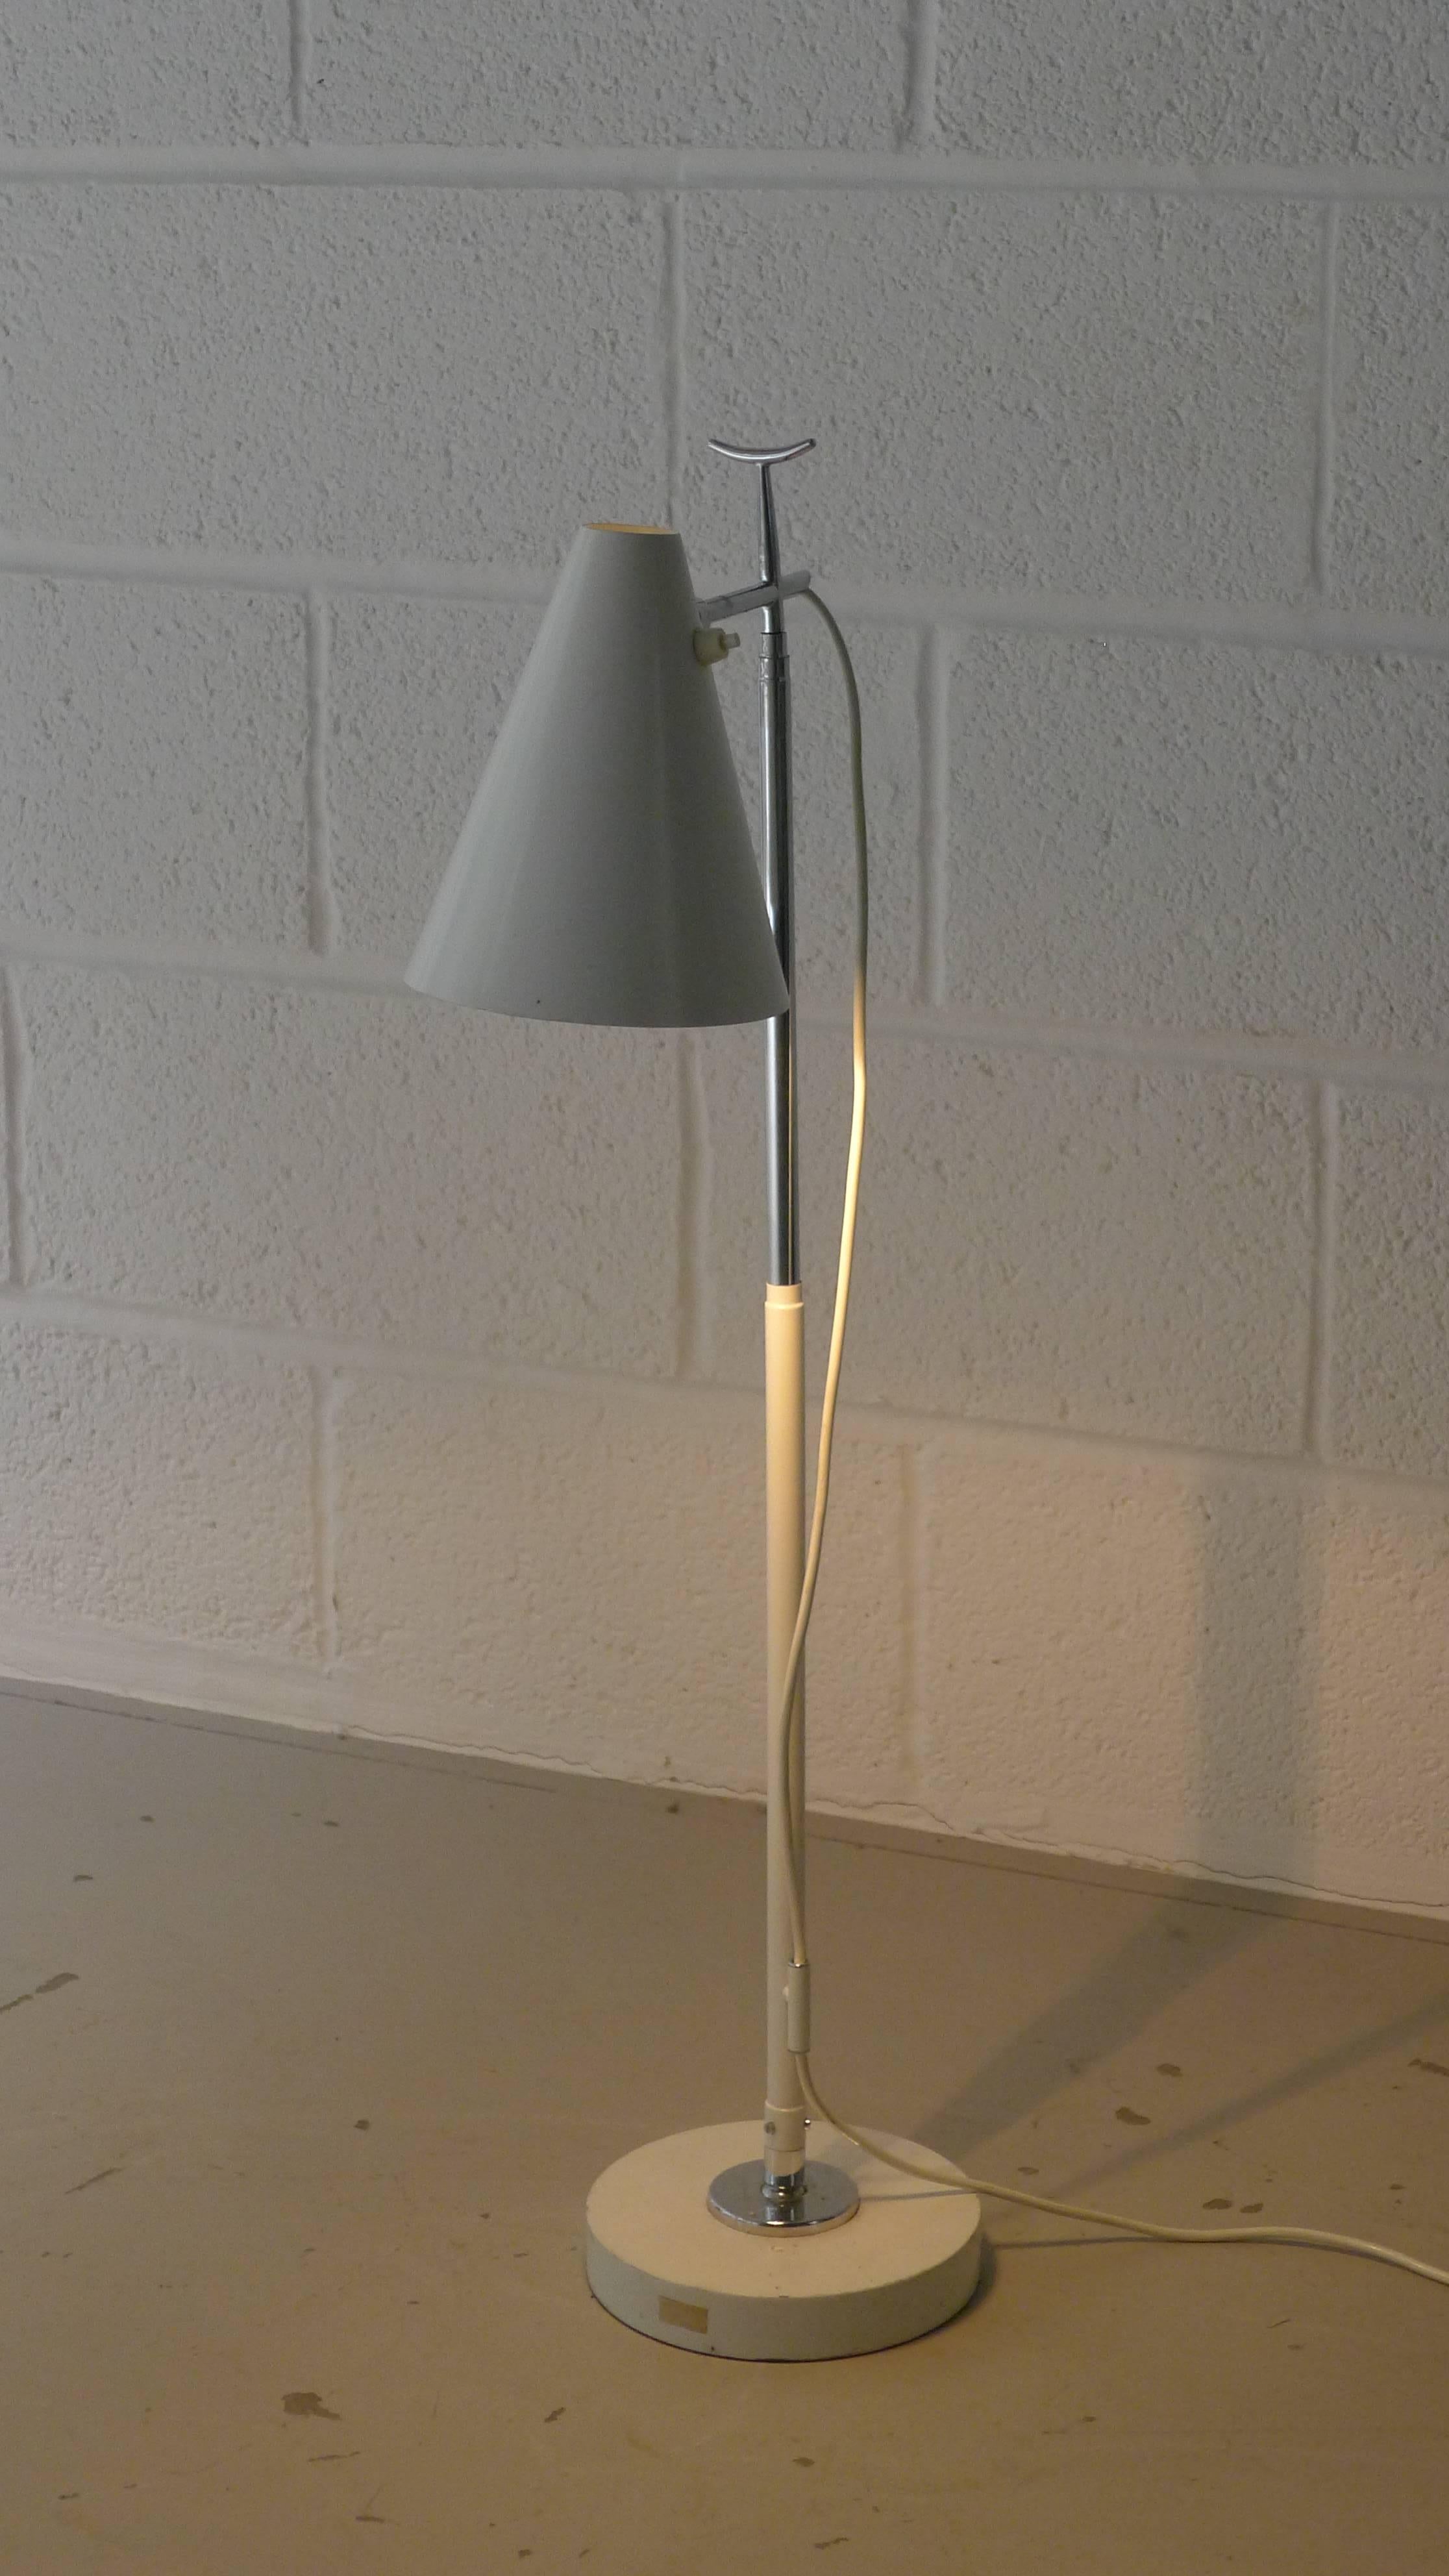 Giuseppe Ostuni for Oluce, Telescopic Floor Lamp, model 201 For Sale 2